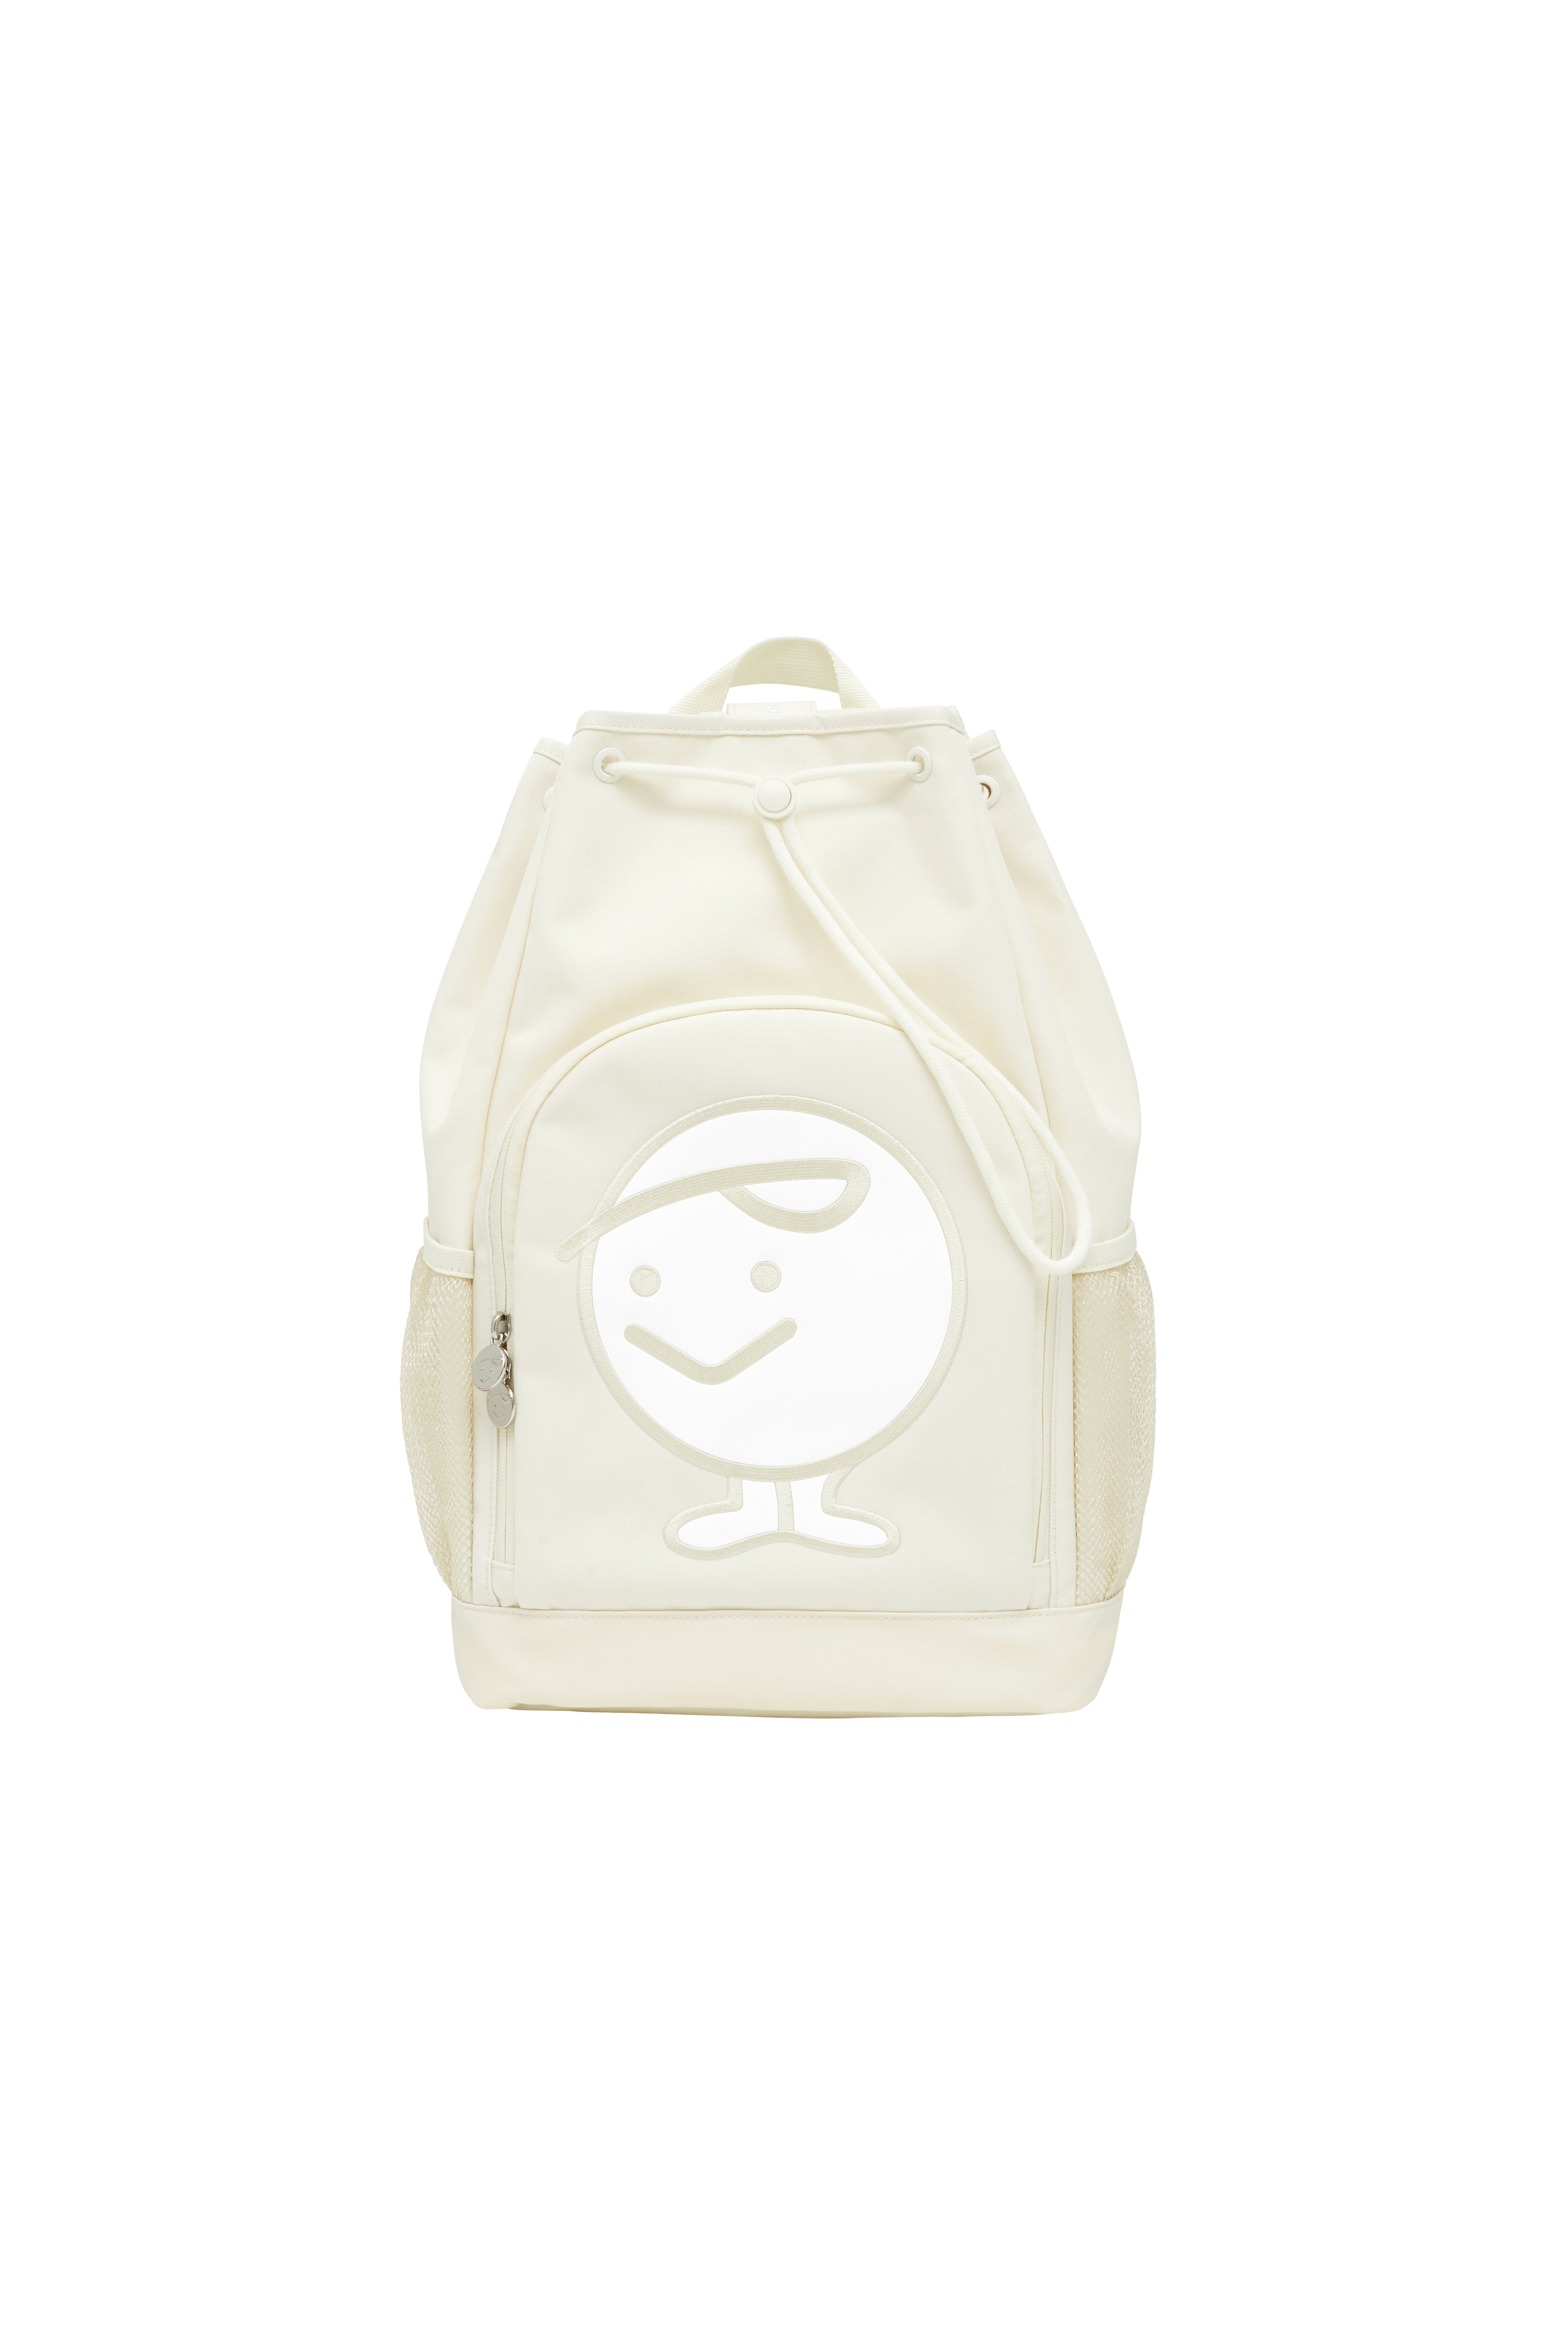 [Reorder] Piv&#039;vee Backpack